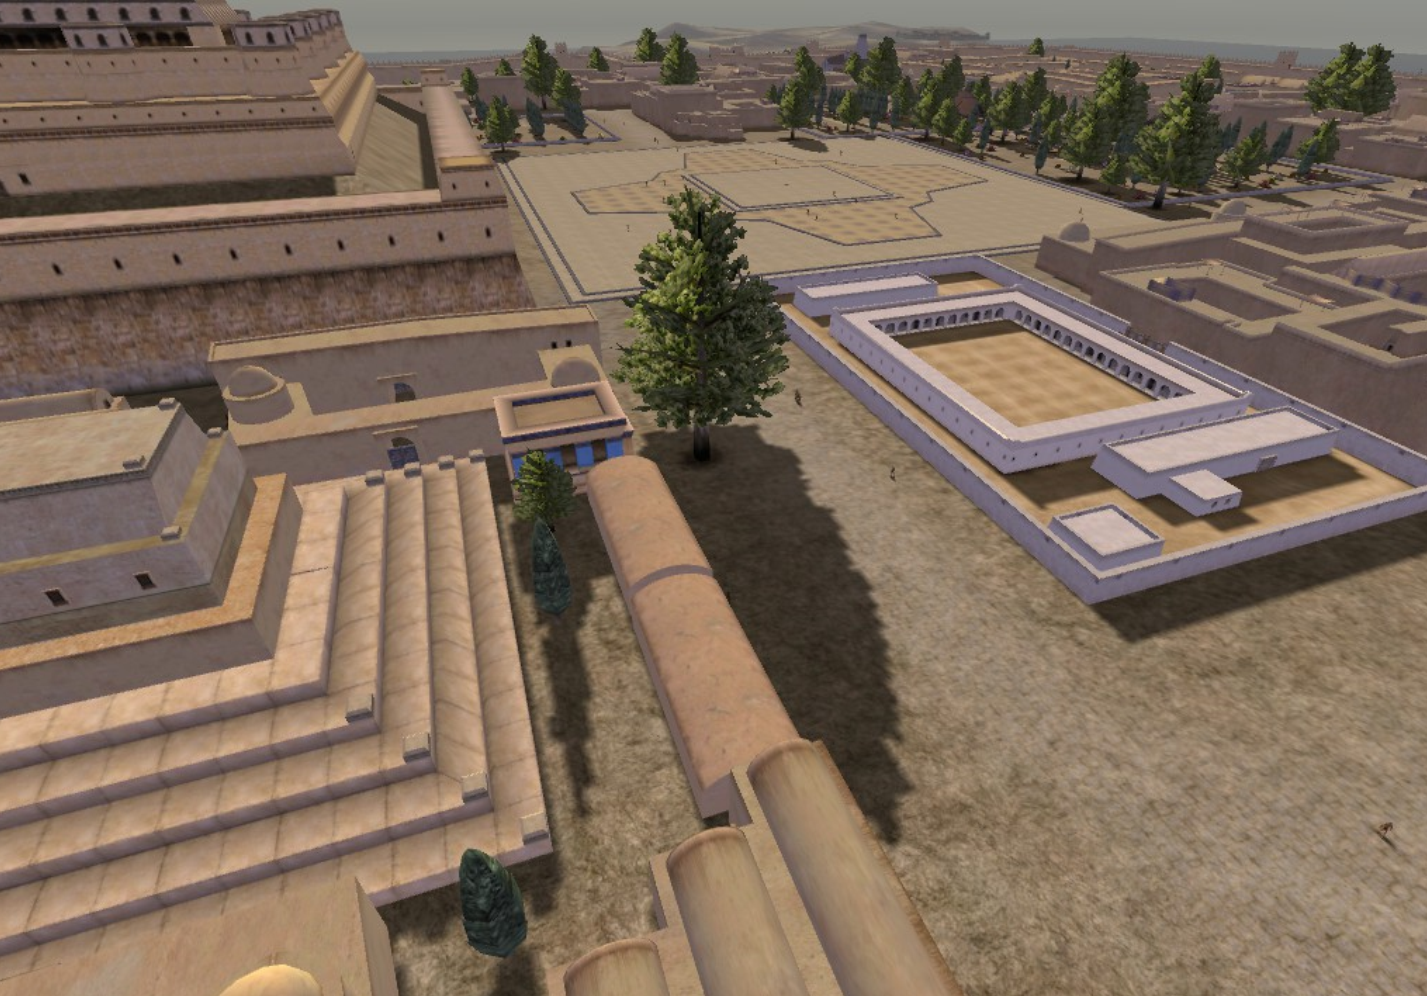 mycenaean city